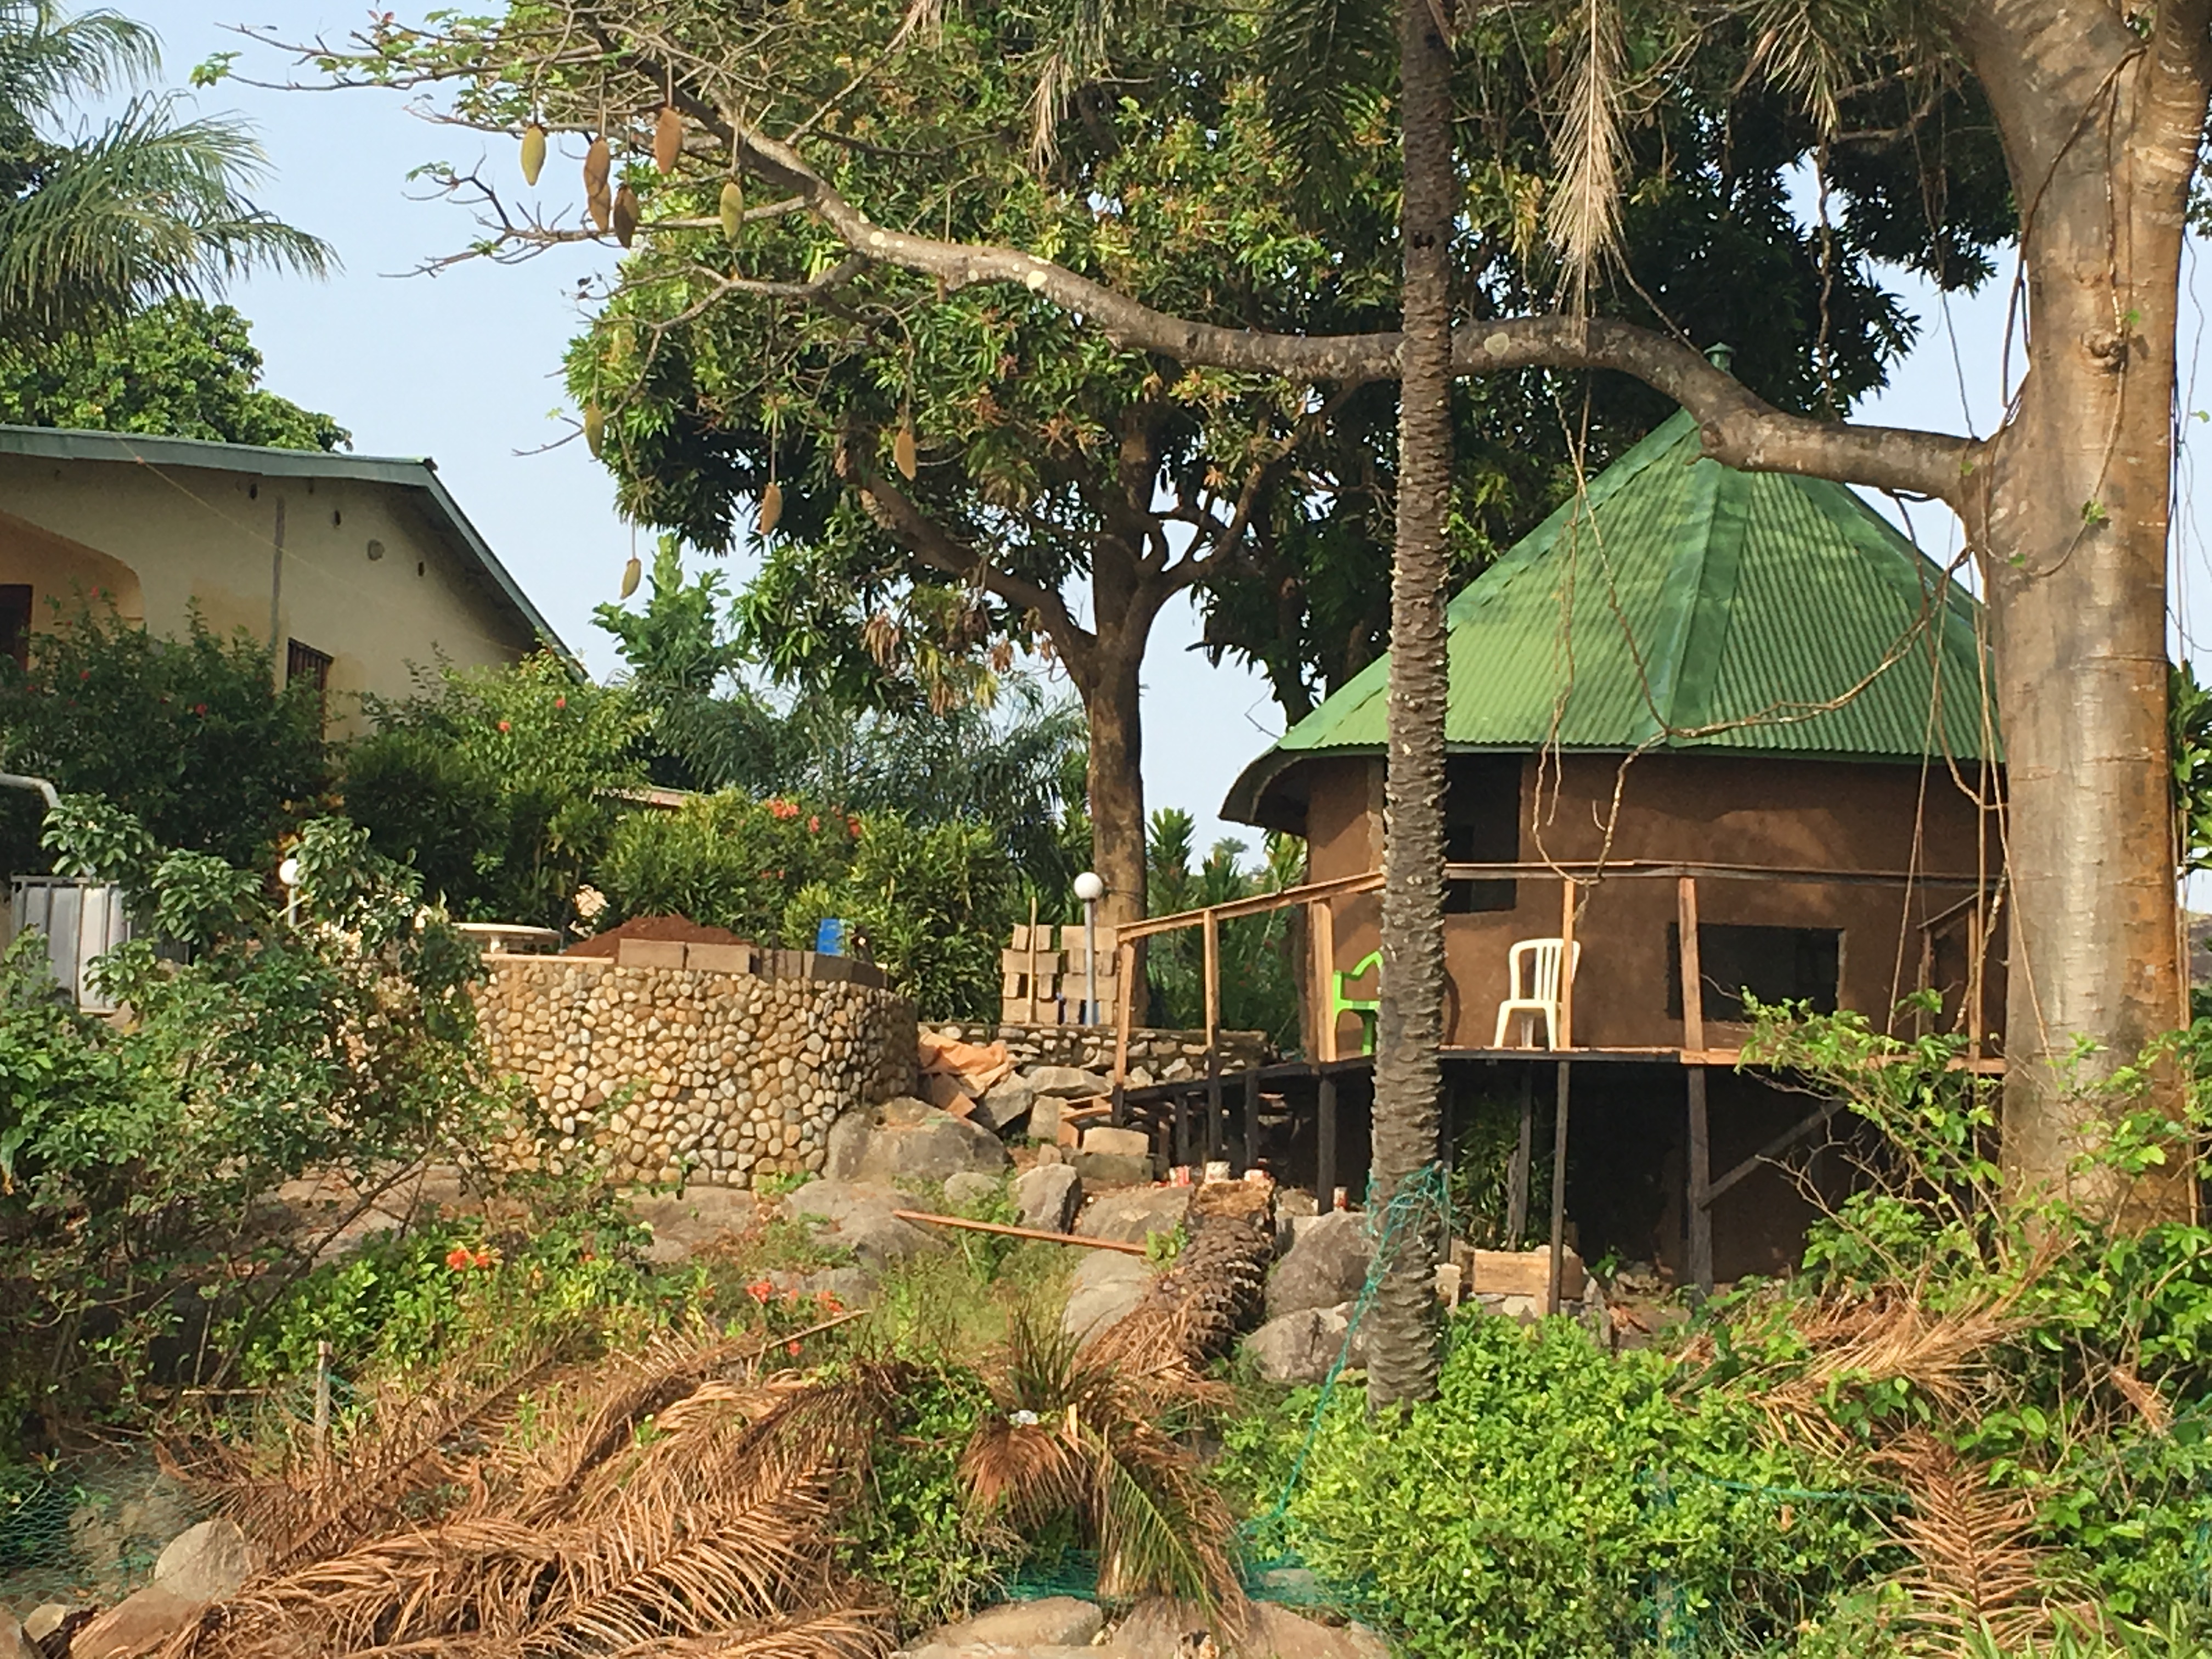 La Villa Elijah Maison d'Hôtes - Guinée Conakry - Camp de Pêche et de Chasse Sous-Marine - Guinea Conakry Fishing & Spearfishing Camp - GCFSC